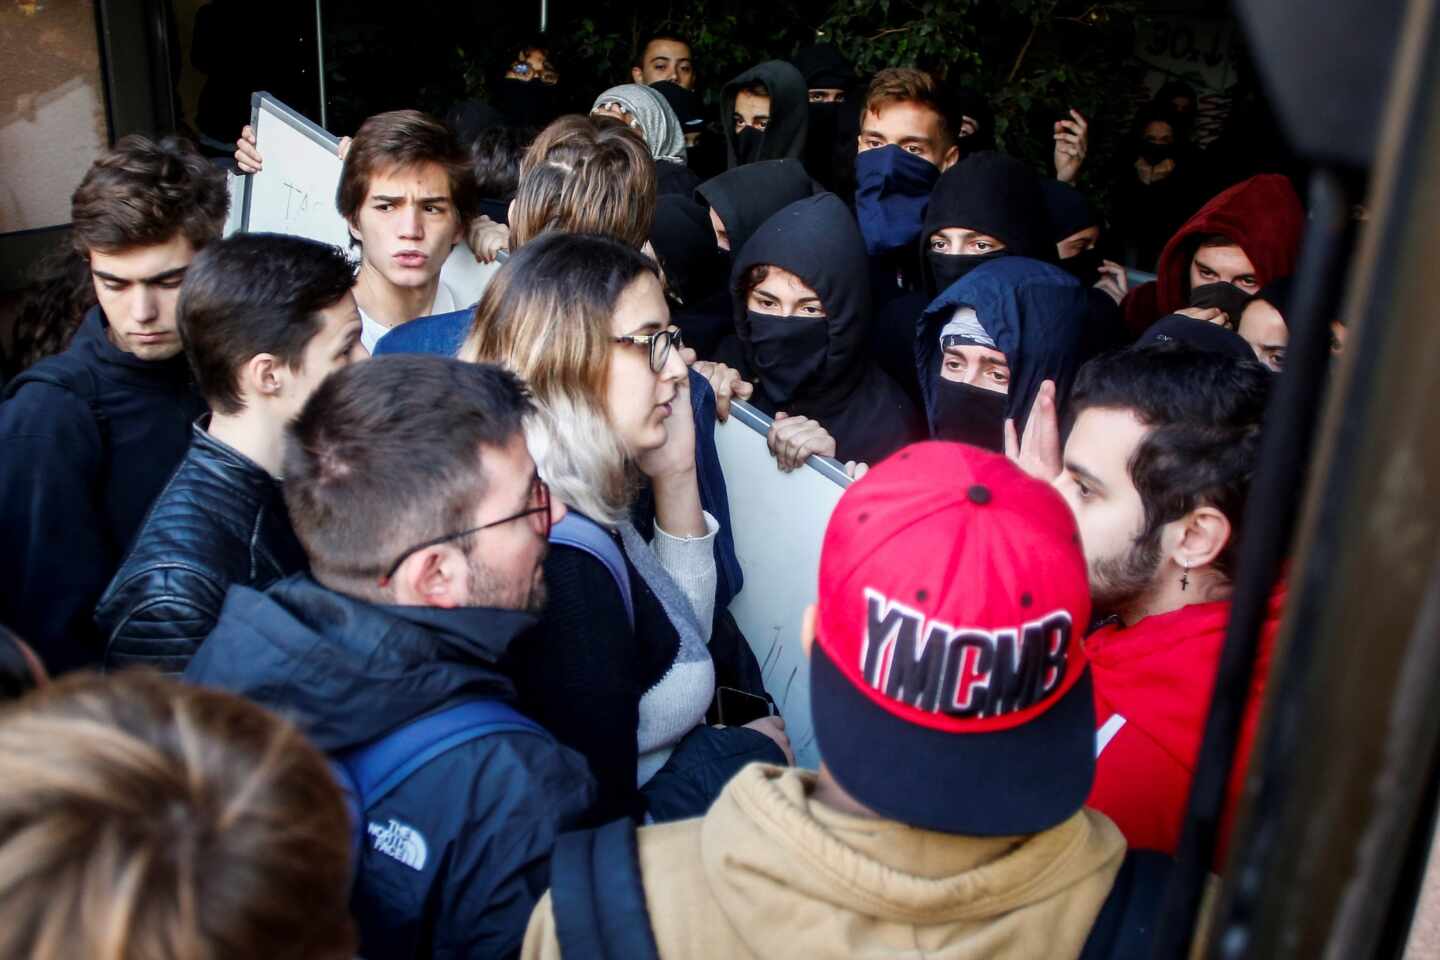 Tensión en la Pompeu Fabra entre radicales y decenas de estudiantes que quieren asistir a clase